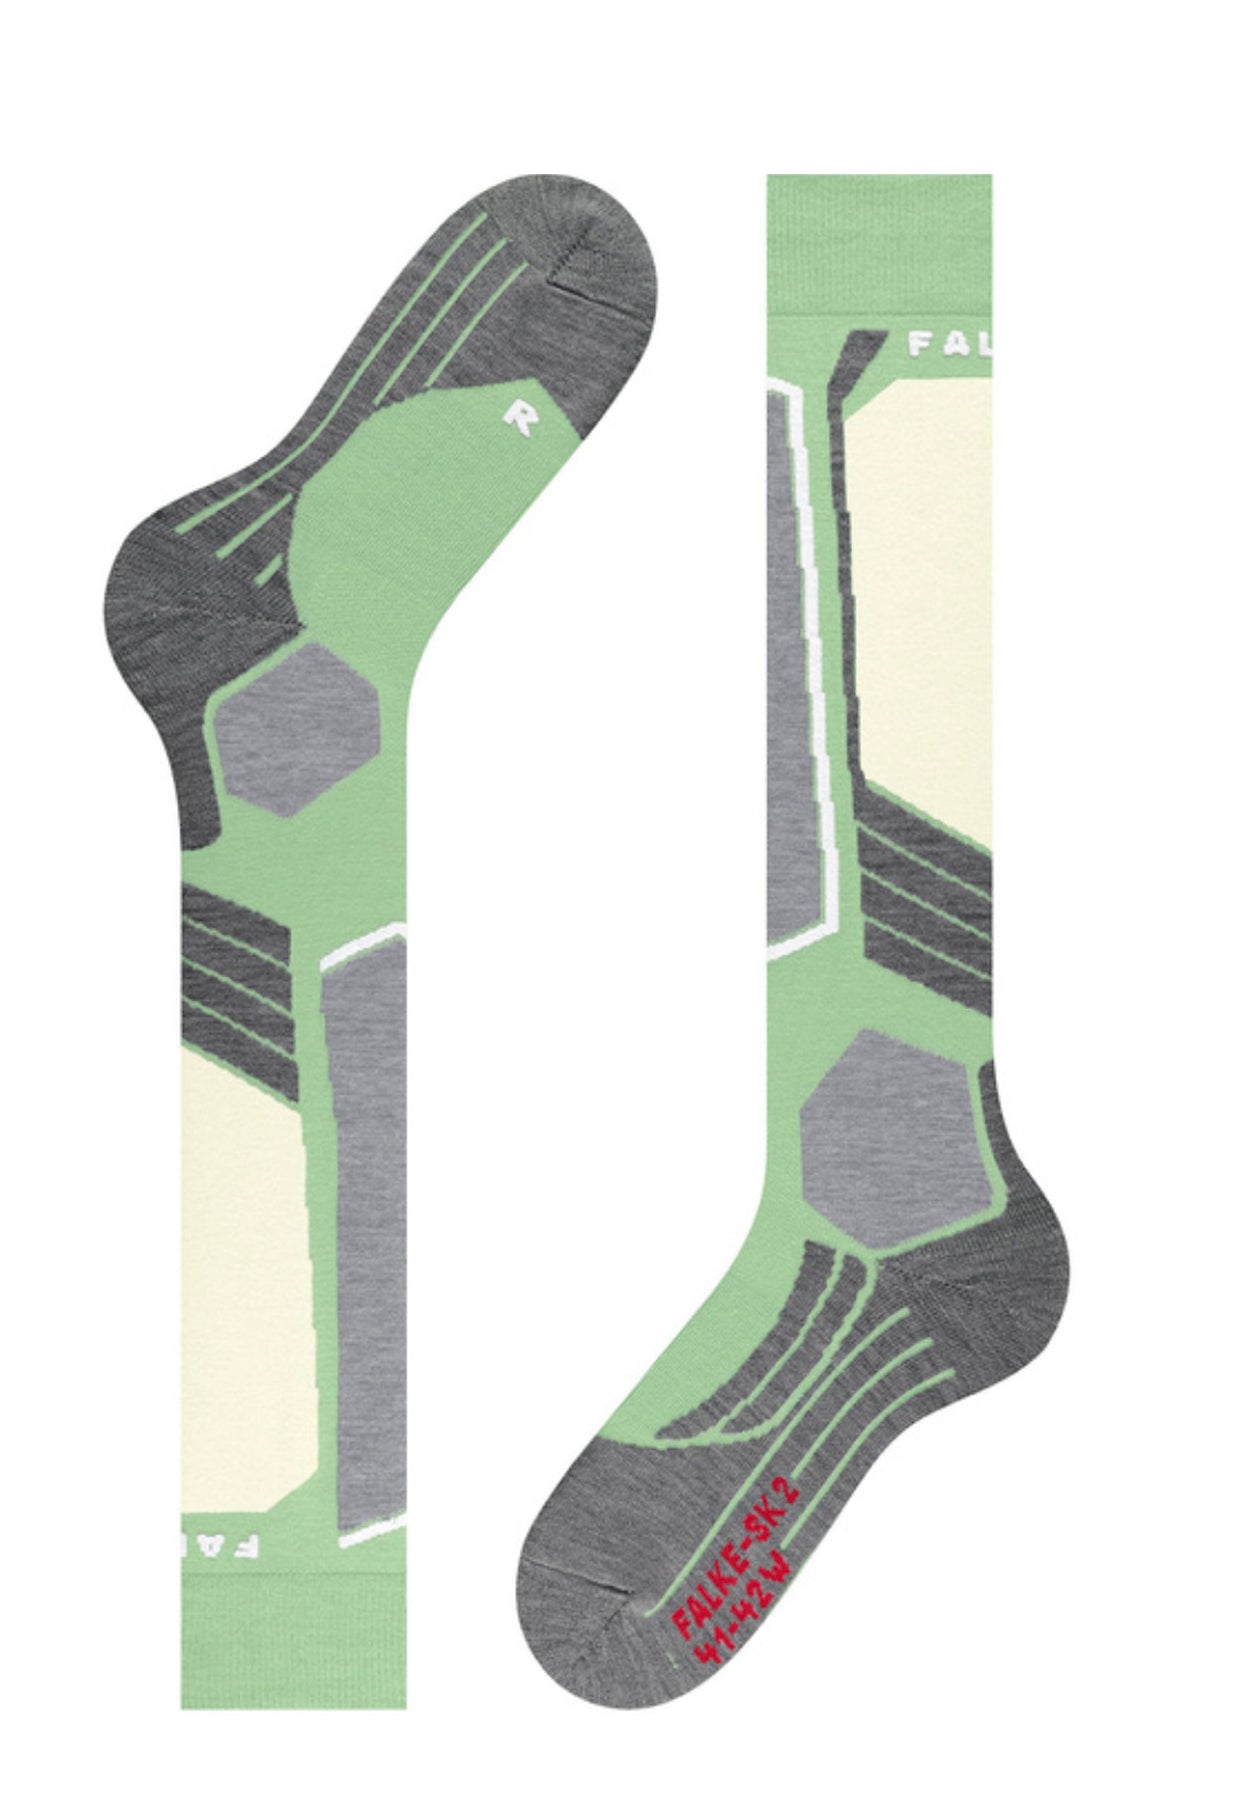 Falke SK2 Womens Ski Sock in Quiet Green